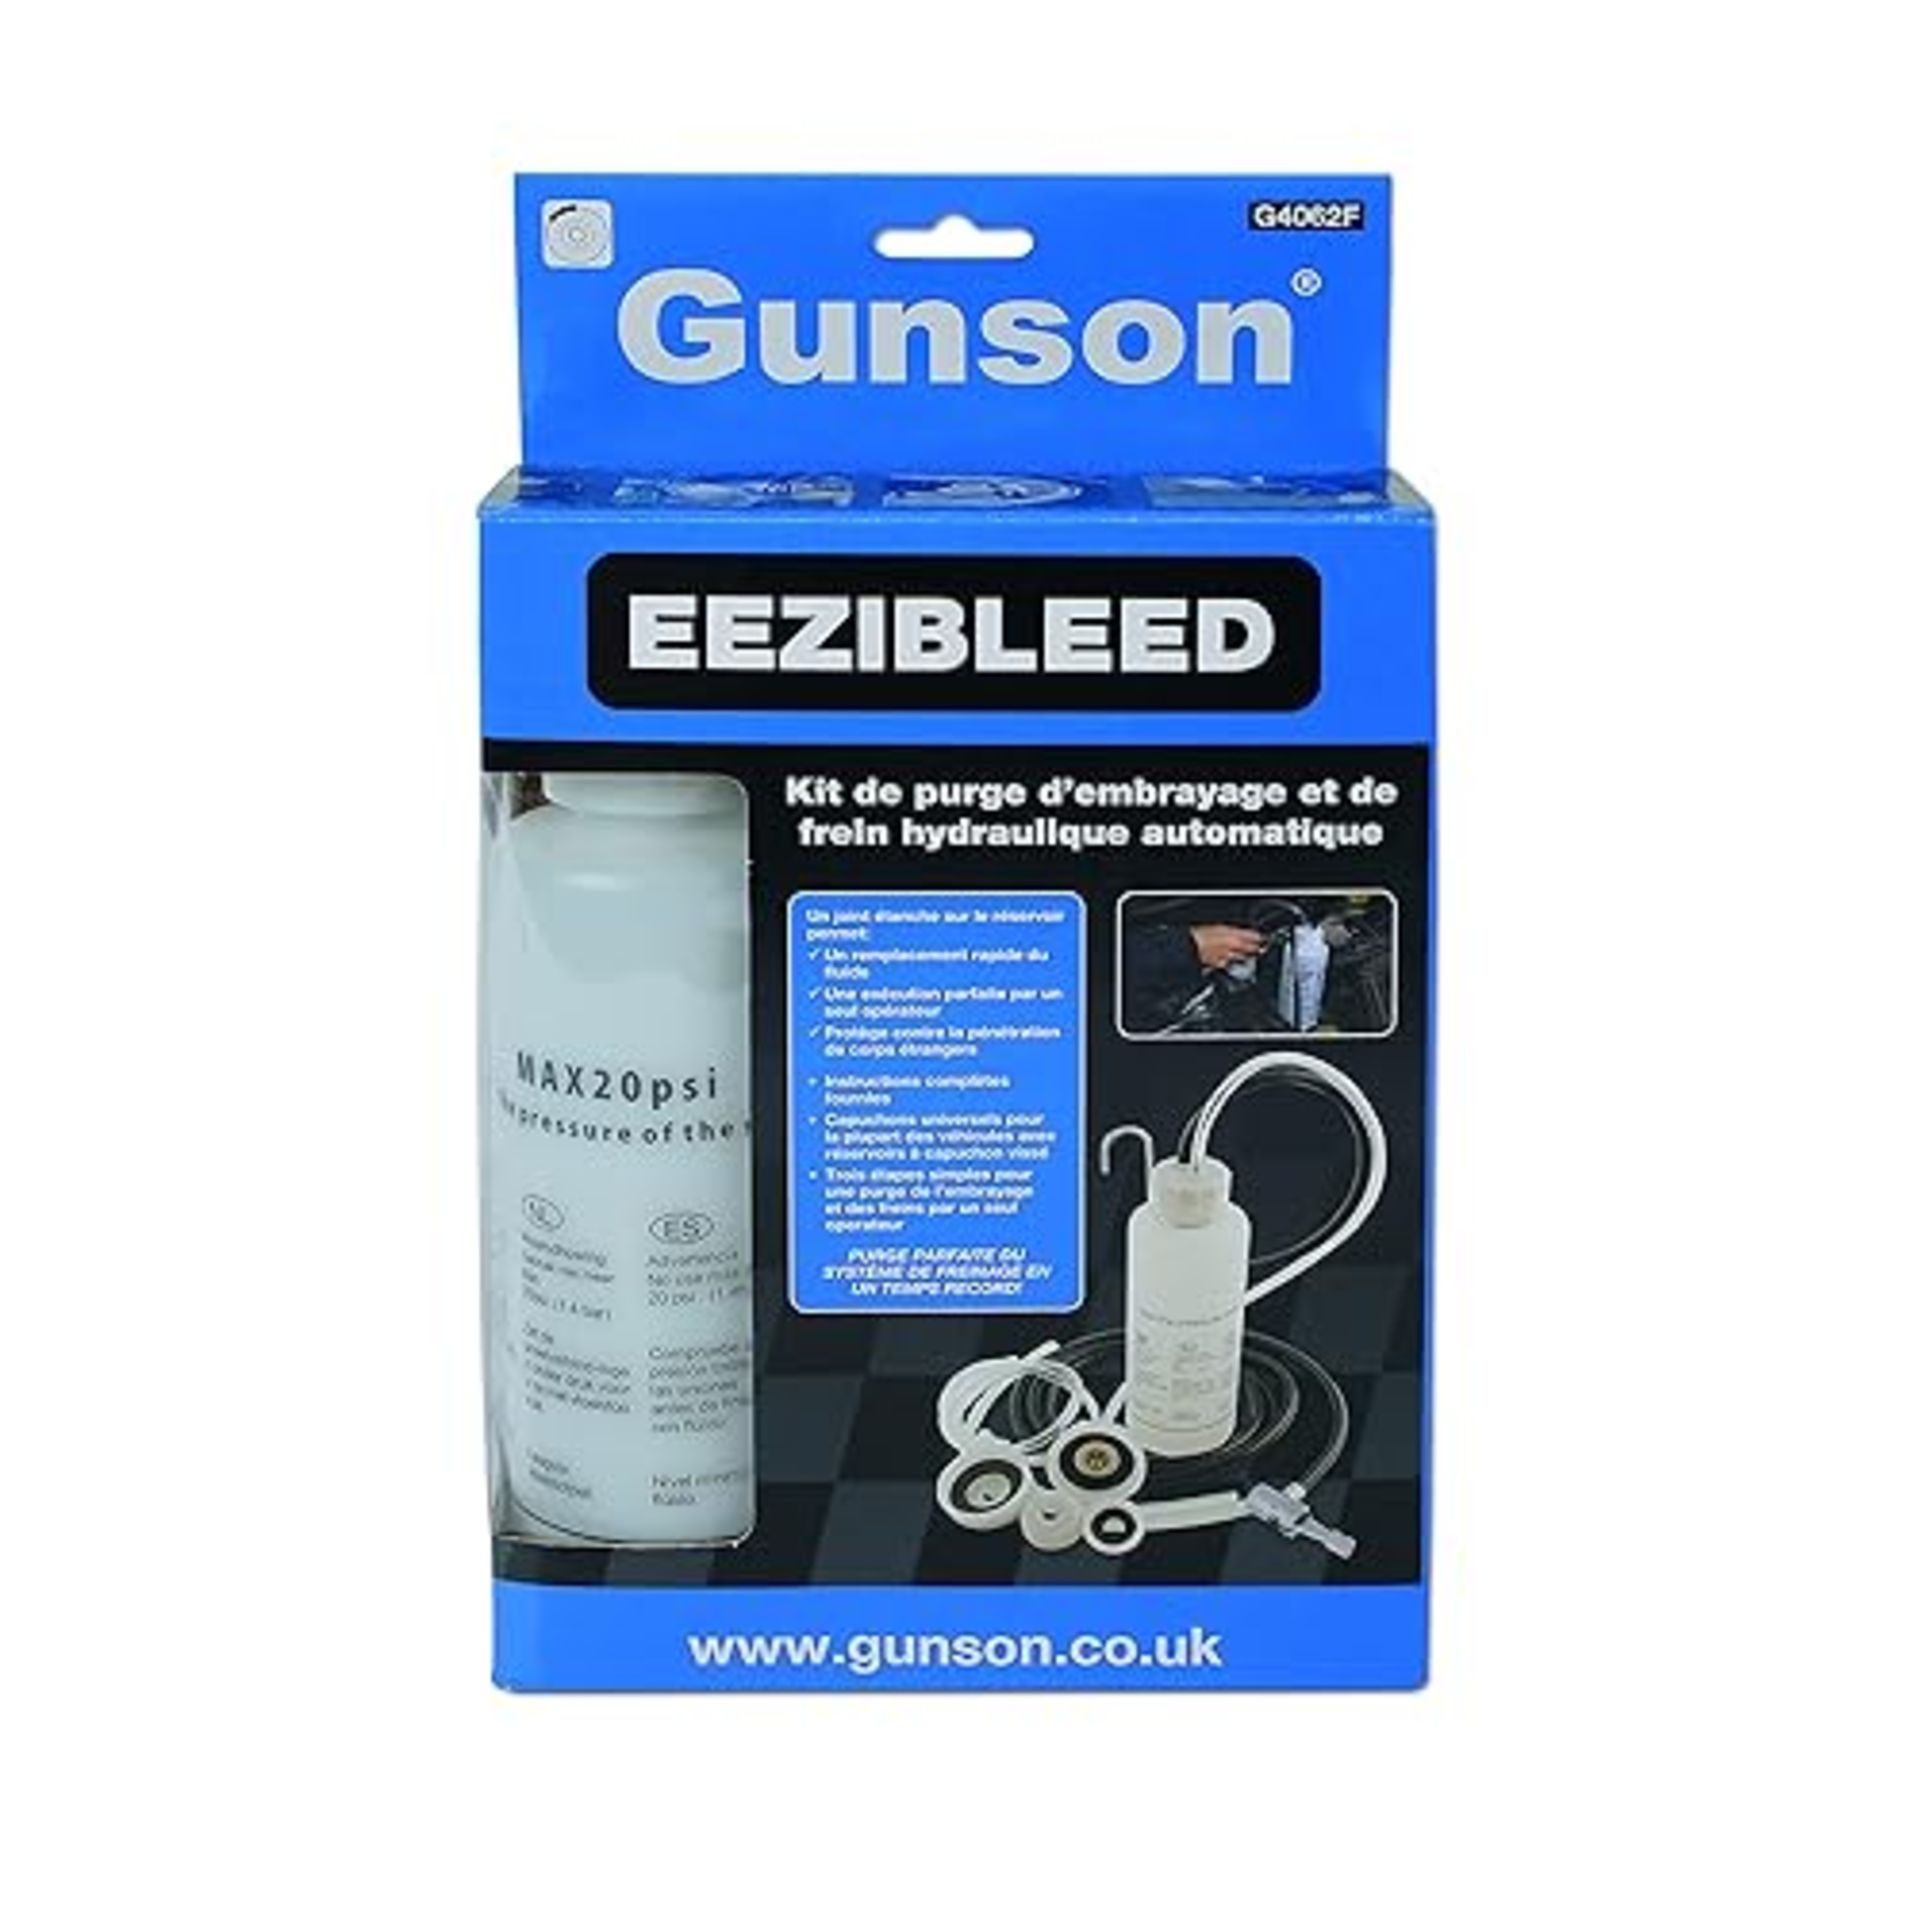 Gunson G4062 Eezibleed Kit